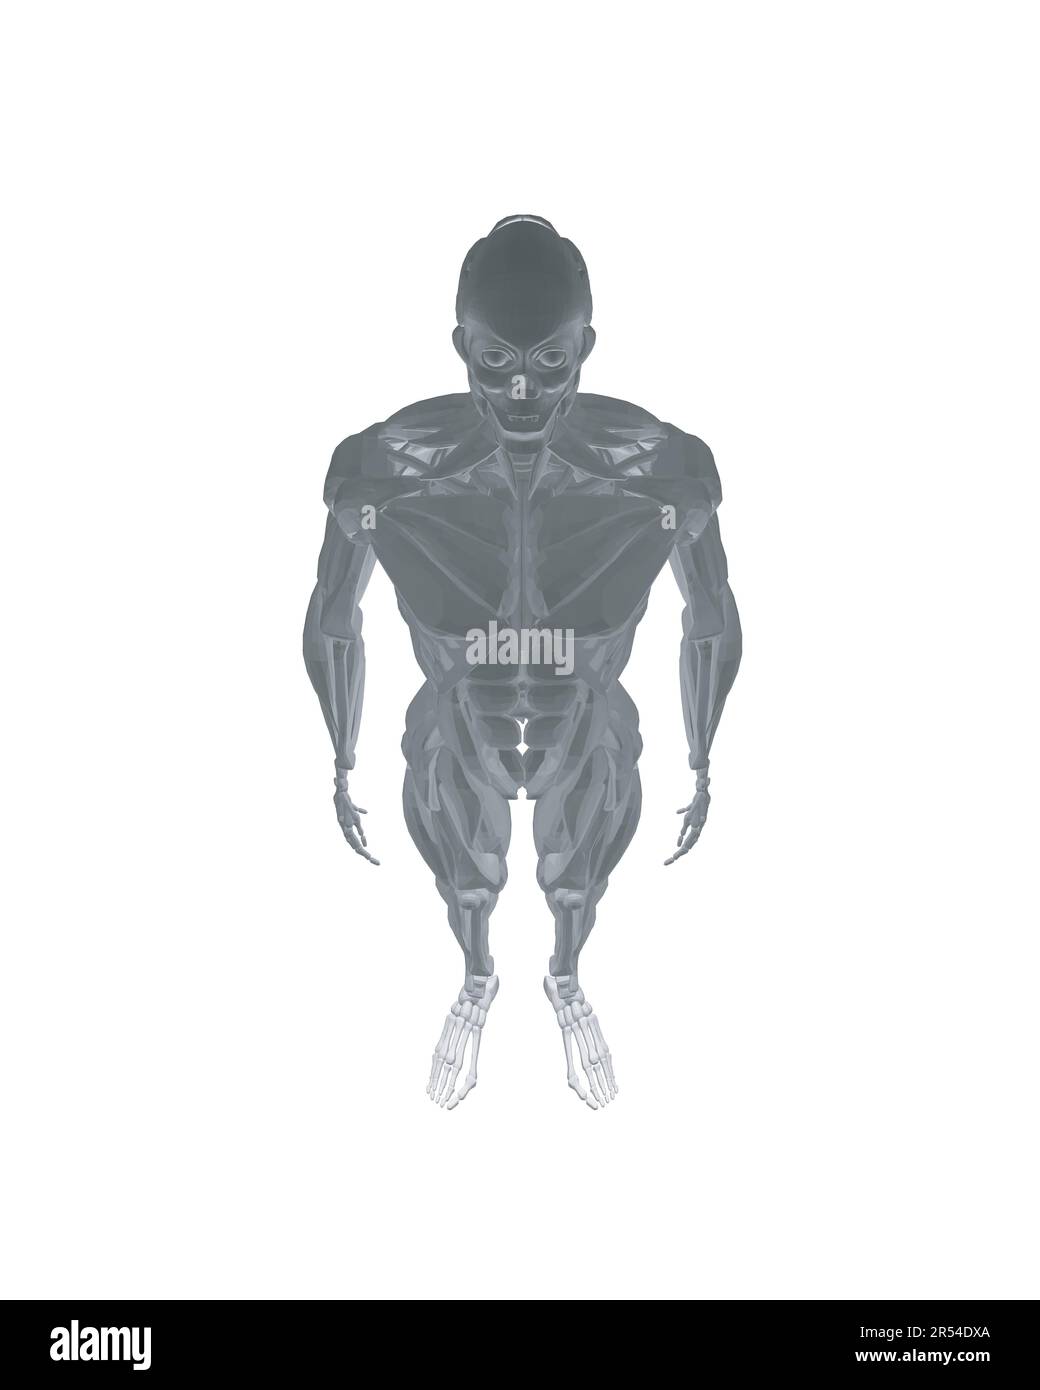 Anatomia umana. Modello di sistema muscolare corpo maschile. Anatomia del sistema muscolare maschile - vista posteriore e anteriore - corpo intero. Corpo poligonale dell'uomo. 3D. Illustrazione Vettoriale